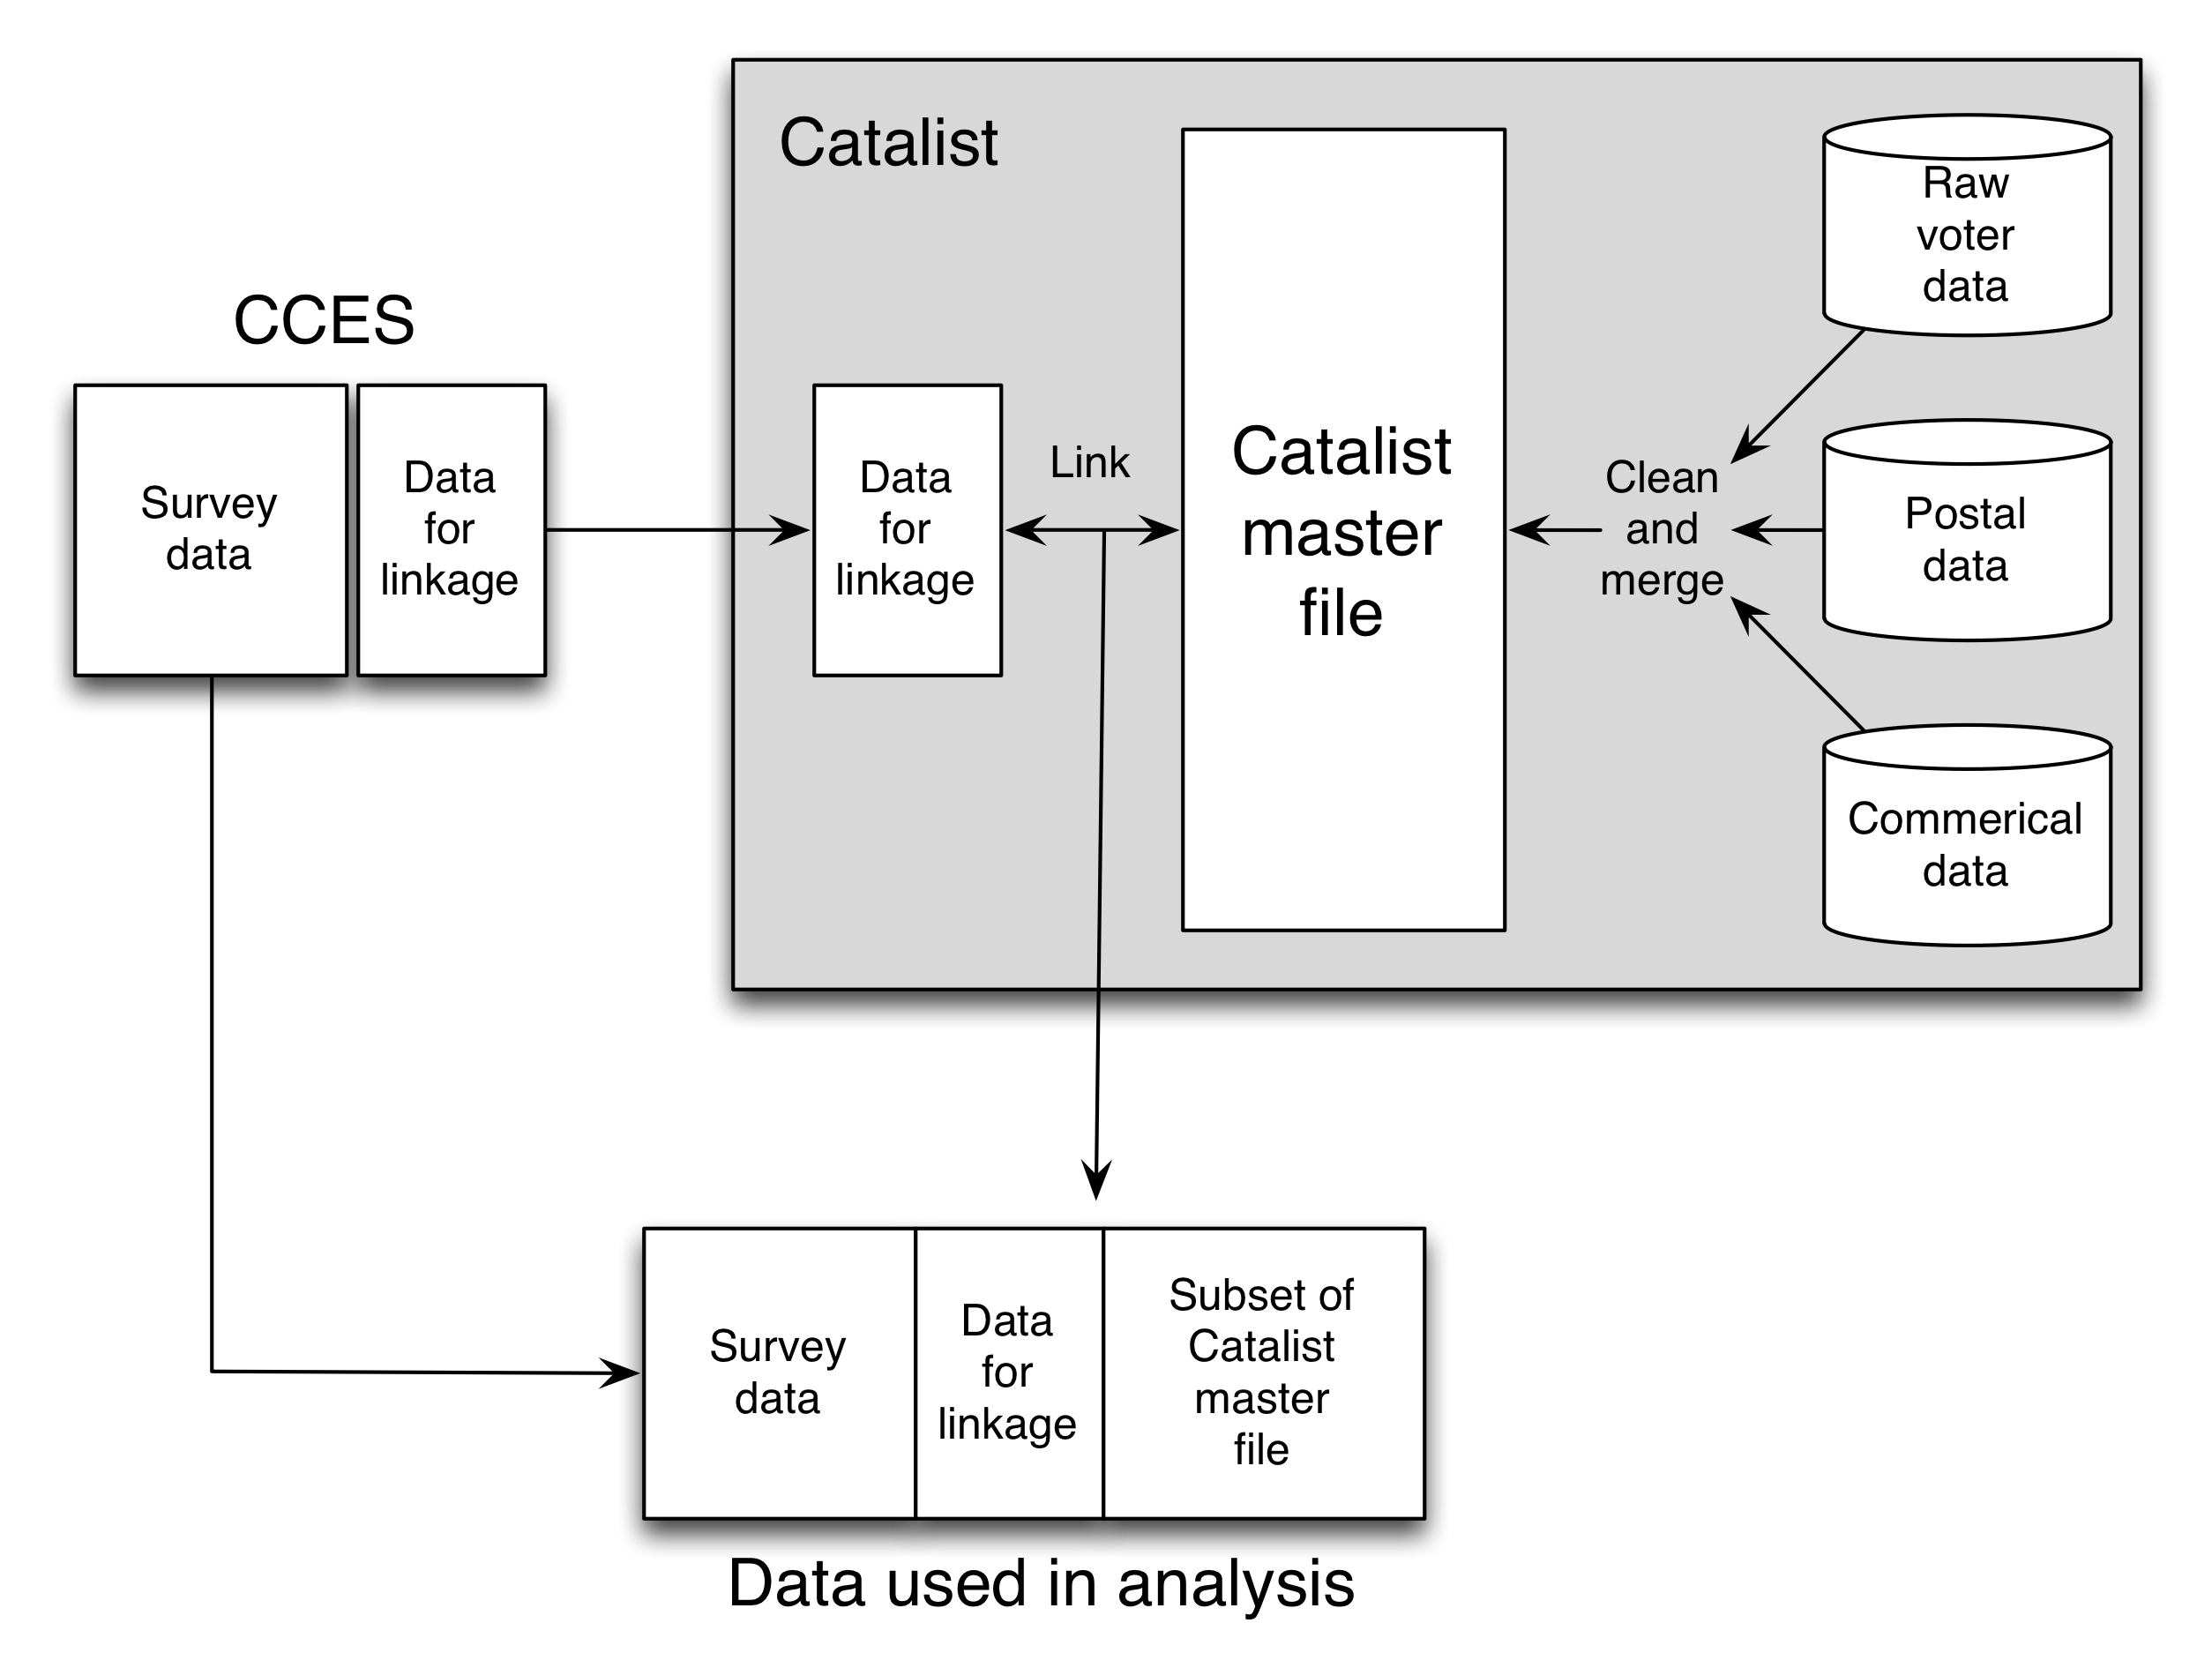 3.13. Ábra: Az Ansolabehere és Hersh (2012) tanulmányának vázlata. A master adatfájl létrehozásához a Catalist több forrásból származó információkat egyesíti és harmonizálja. Az összevonásnak ez a folyamata, bármennyire is óvatos, hibákat terjeszt az eredeti adatforrásokban, és új hibákat fog bevezetni. A második hibaforrás a felmérési adatok és a master adatfájl közötti rekordösszeköttetés. Ha minden személynek stabil, egyedi azonosítója van mindkét adatforrásban, akkor az összekapcsolás triviális lenne. De Catalist-nak a tökéletlen azonosítókkal, a név, a nem, a születési év és az otthoni cím használatával kellett megtennie a kapcsolatot. Sajnos sok esetben hiányos vagy pontatlan információ lehet; egy Homer Simpson nevű szavazó lehet Homer Jay Simpson, Homie J Simpson vagy akár Homer Sampsin. Annak ellenére, hogy a katalizátor mester adatfájlában hibák fordulnak elő hibák és a rekordkapcsolat hibái, az Ansolabehere és a Hersh többféle típusú ellenőrzéseket végezhet a becslésekben.